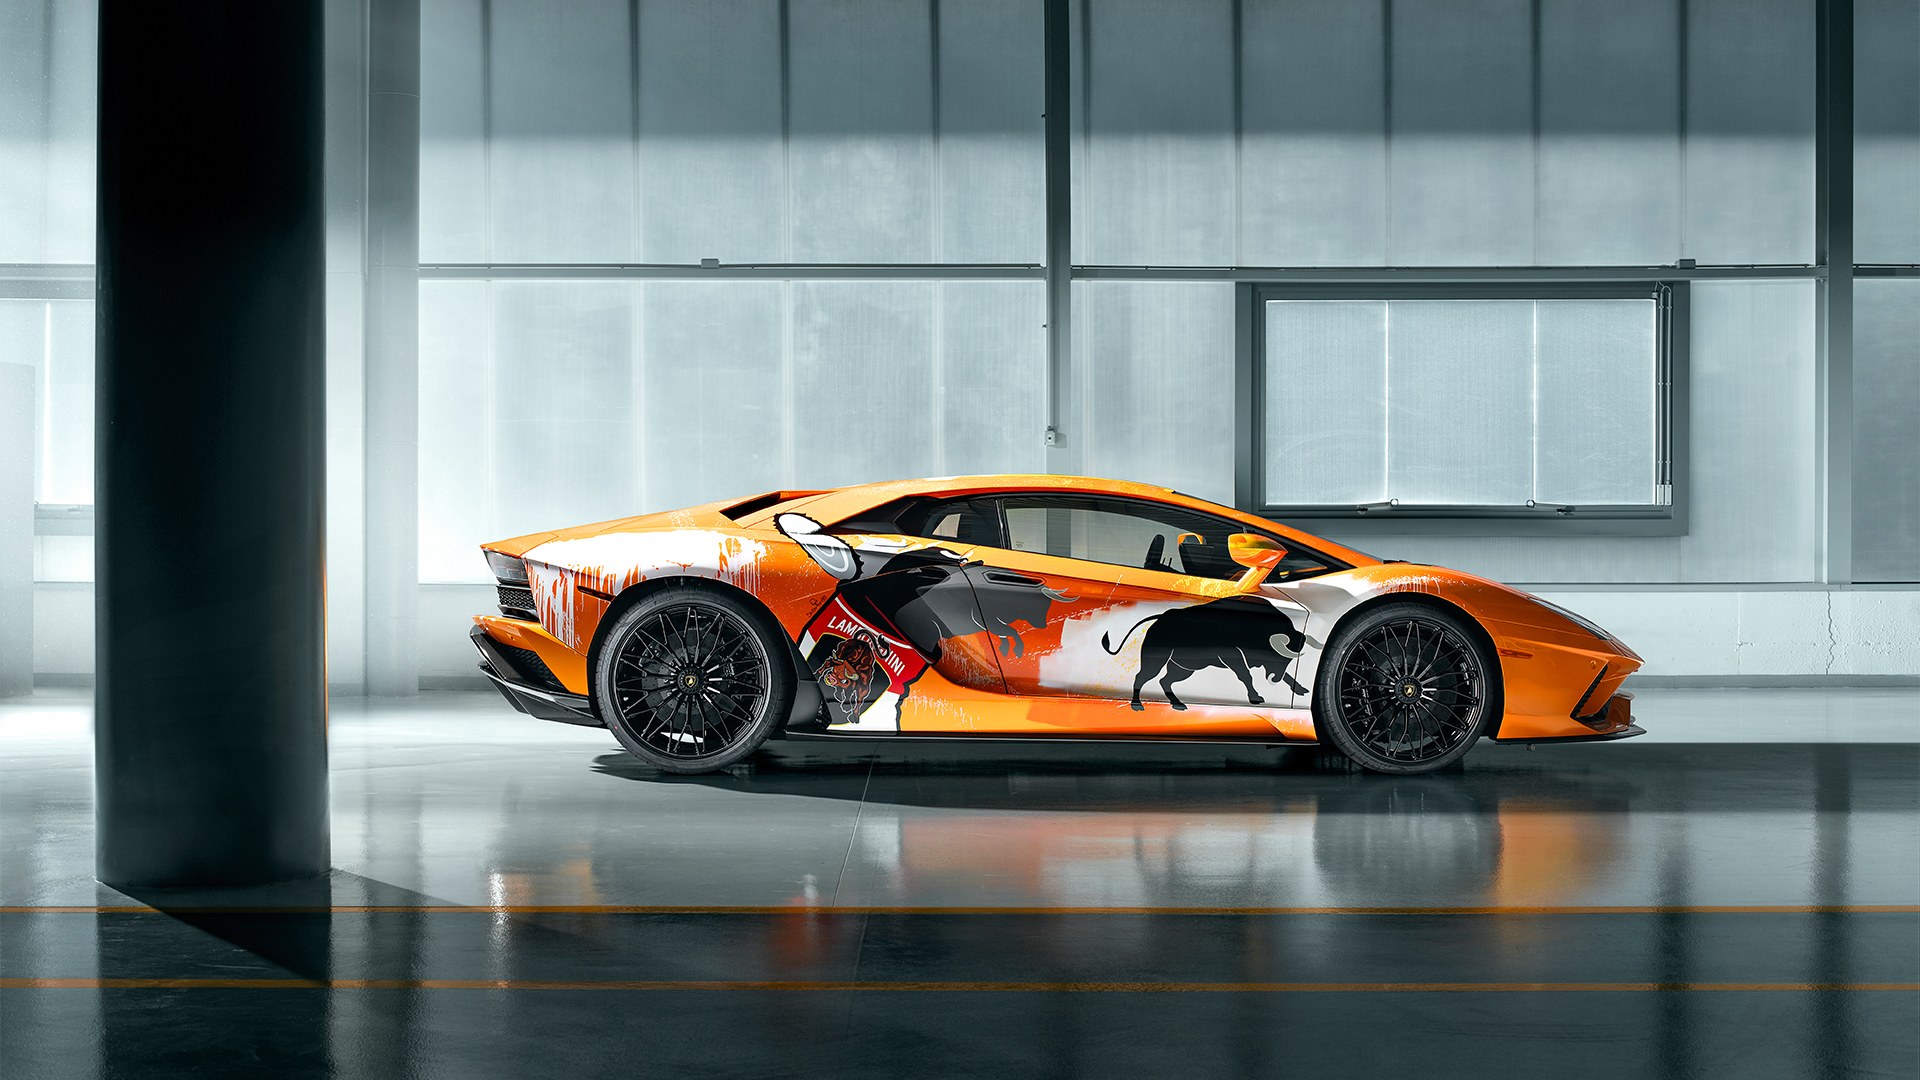 Giải thưởng Lamborghini Future FAB đã trở lại với nhiều bất ngờ mới! Ảnh liên quan đến giải thưởng này sẽ giới thiệu về những tài năng trẻ và những chiếc xe đầy tinh thần sáng tạo. Hãy đón xem để cập nhật những thông tin mới nhất về giải thưởng danh giá này!